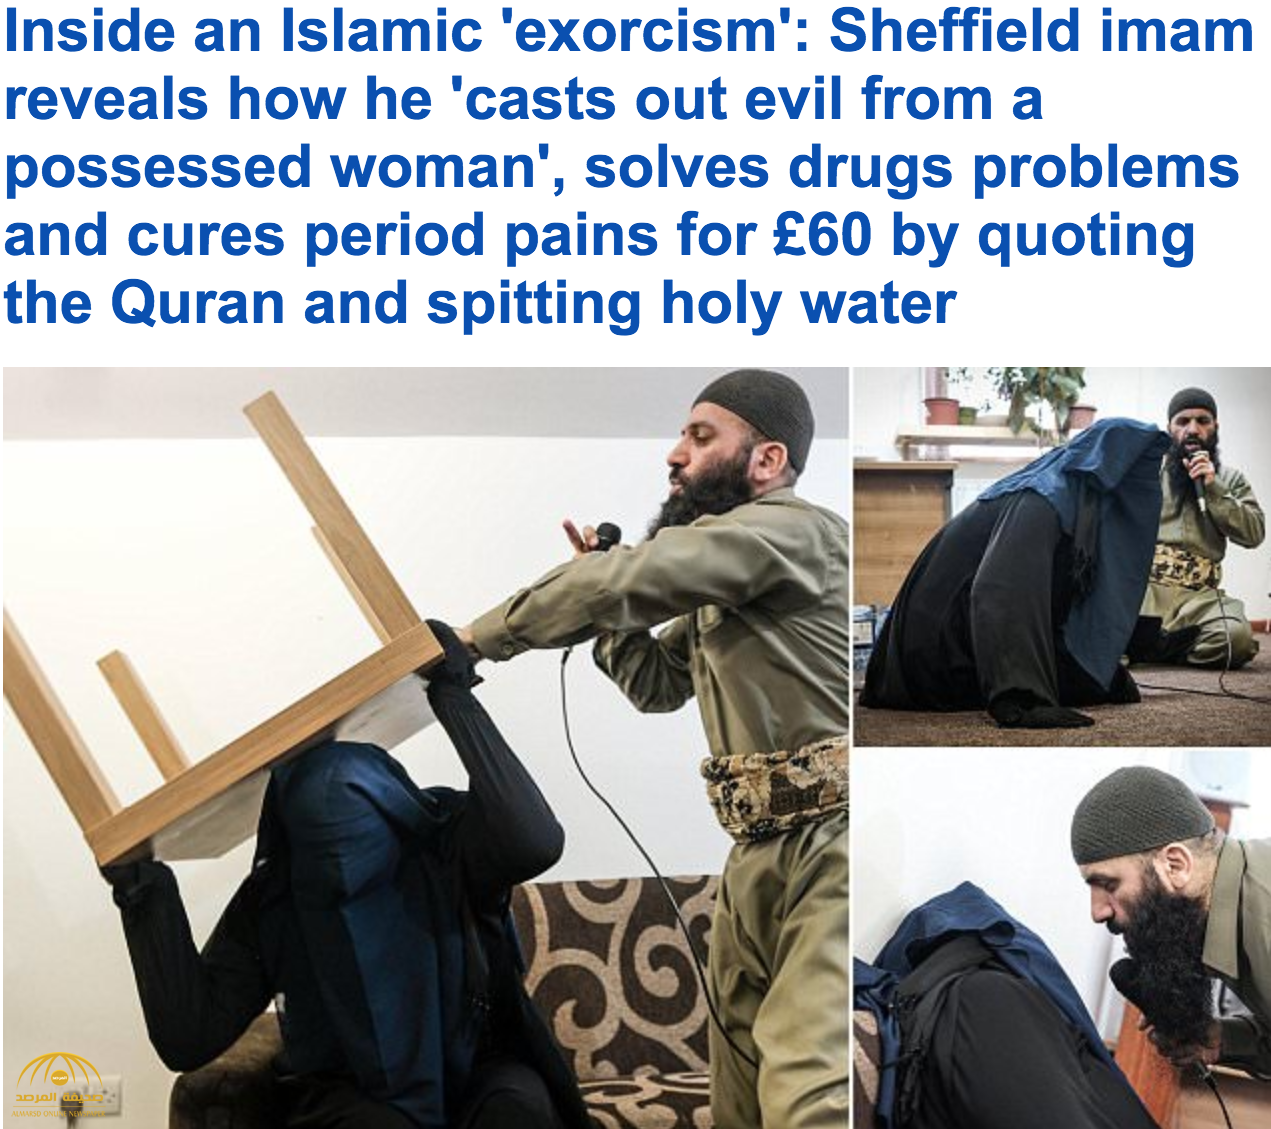 فيديو: شاهد.. إمام مسجد في بريطانيا يطرد "جن عاشق" من" فتاة" مقابل 60 جنيه إسترليني !